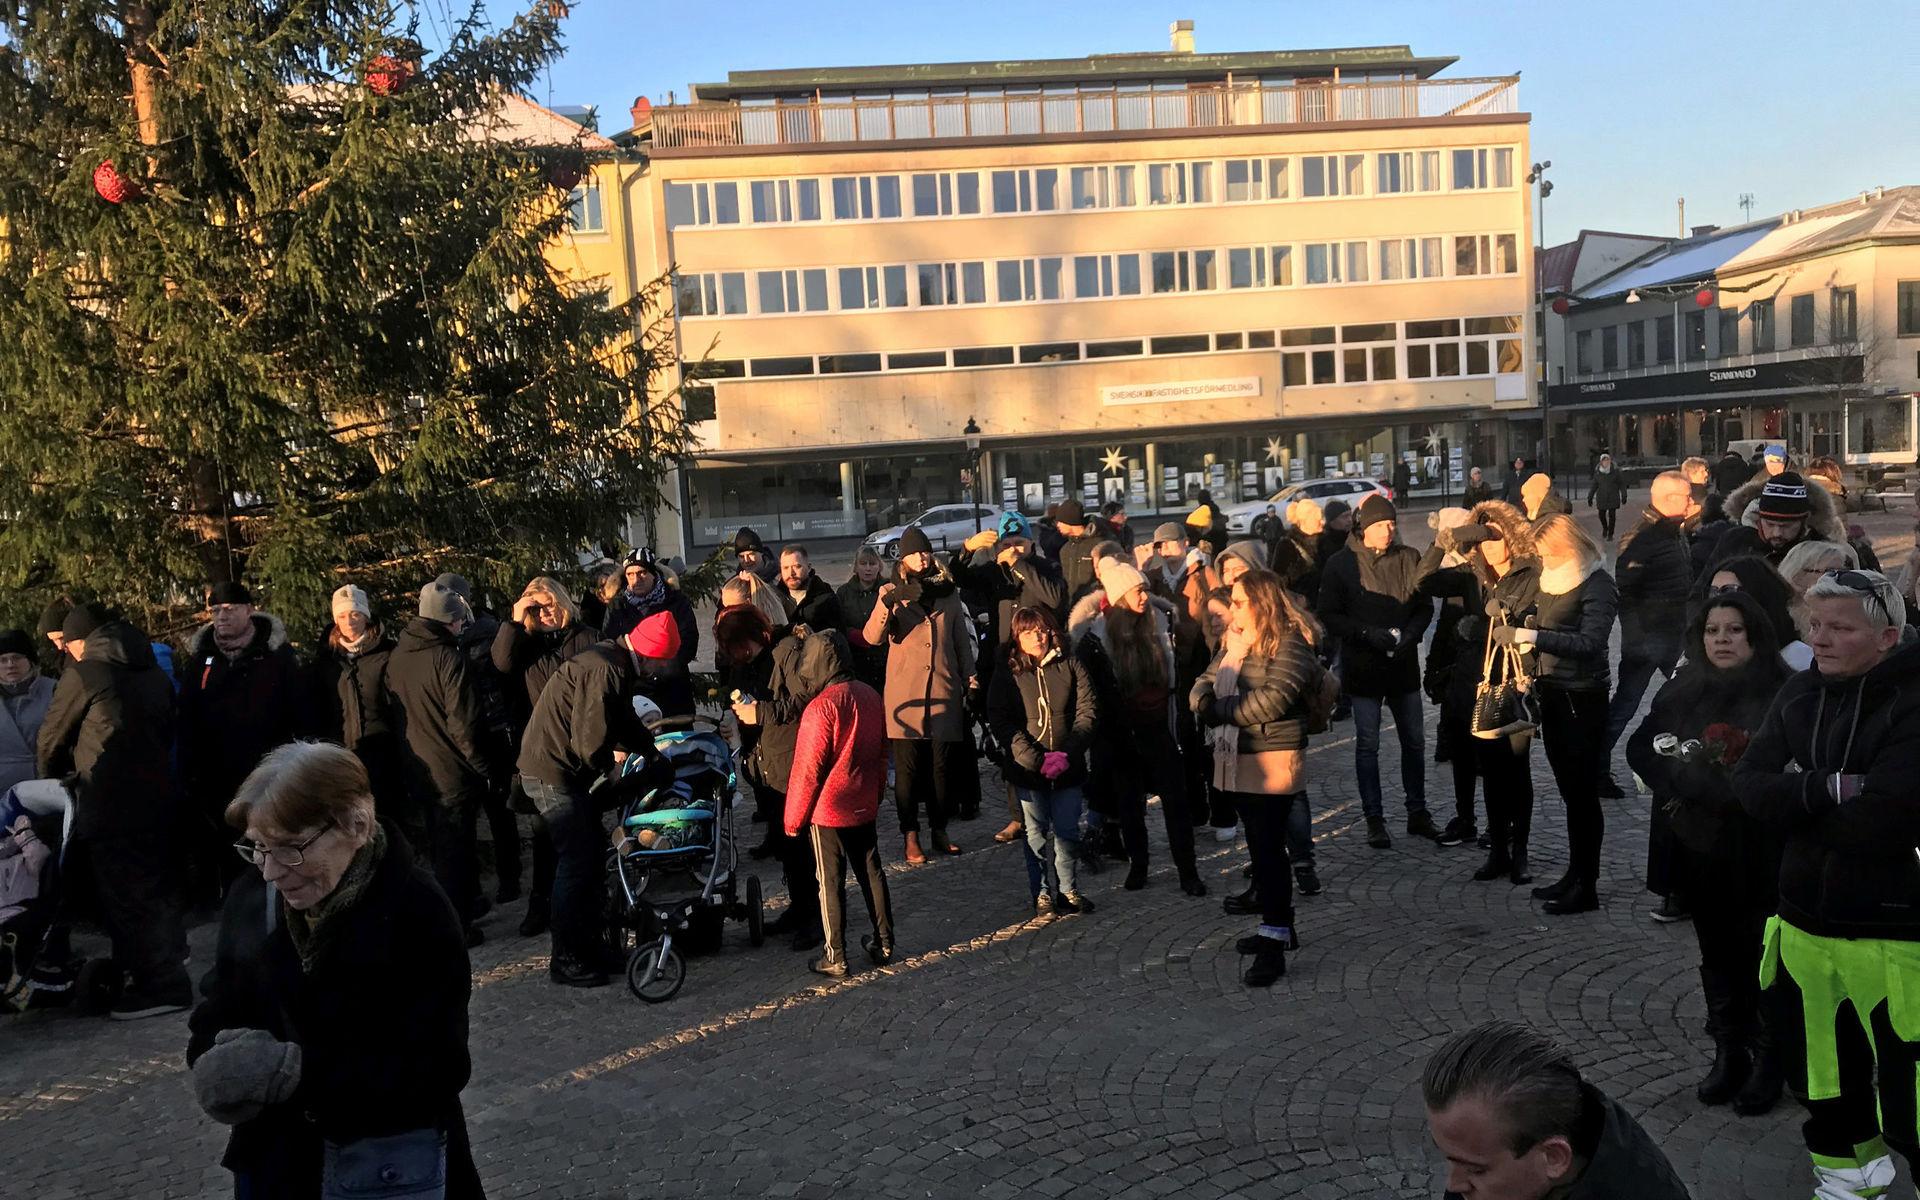 Hundratals samlades på Kungstorget i Uddevalla för att hedra Wilma Andersson efter beskedet att det är uteslutet att finna henne vid liv.